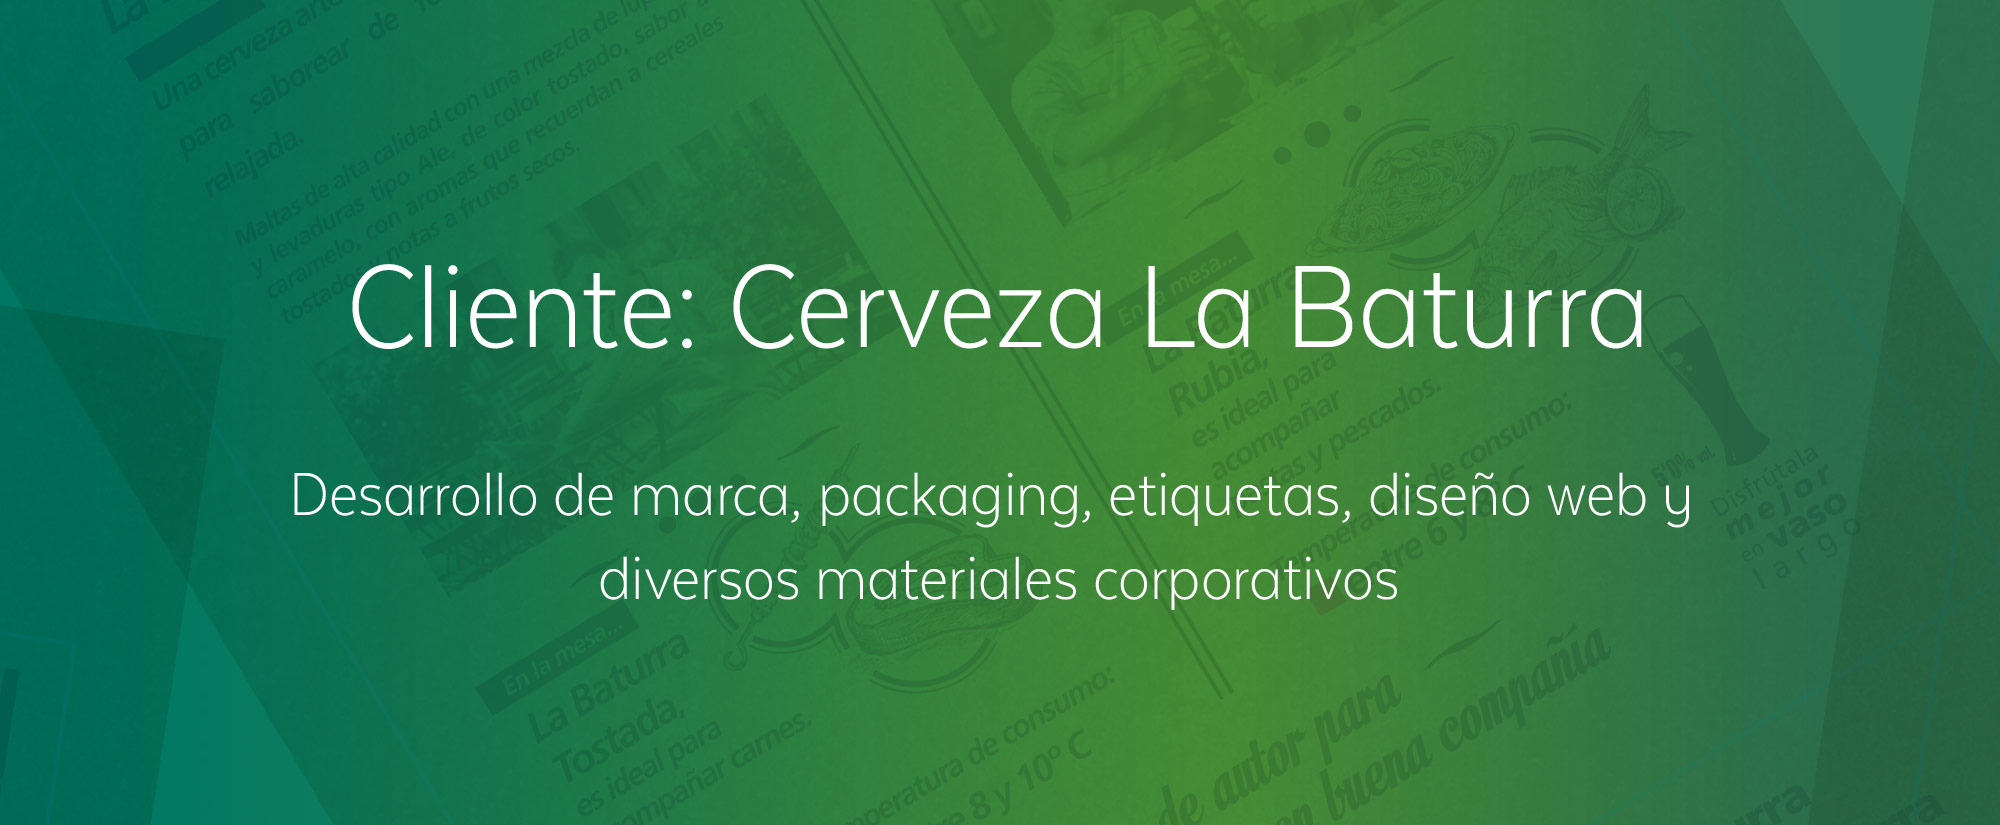 Diseños y desarrollo de marca, packaging y etiquetas Cerveza La Baturra